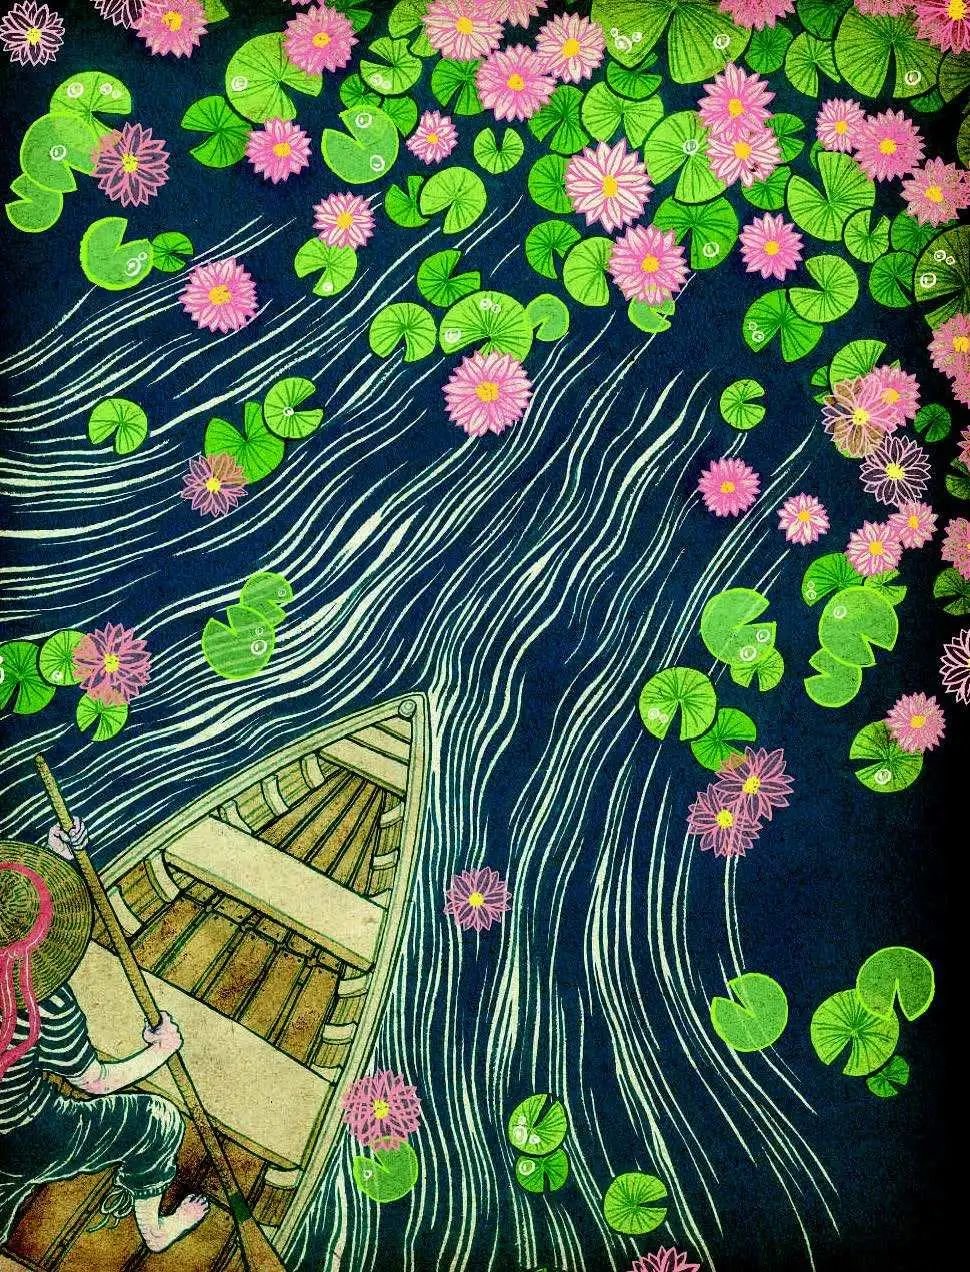 清水裕子，《睡莲》（Water Lilies），2015年